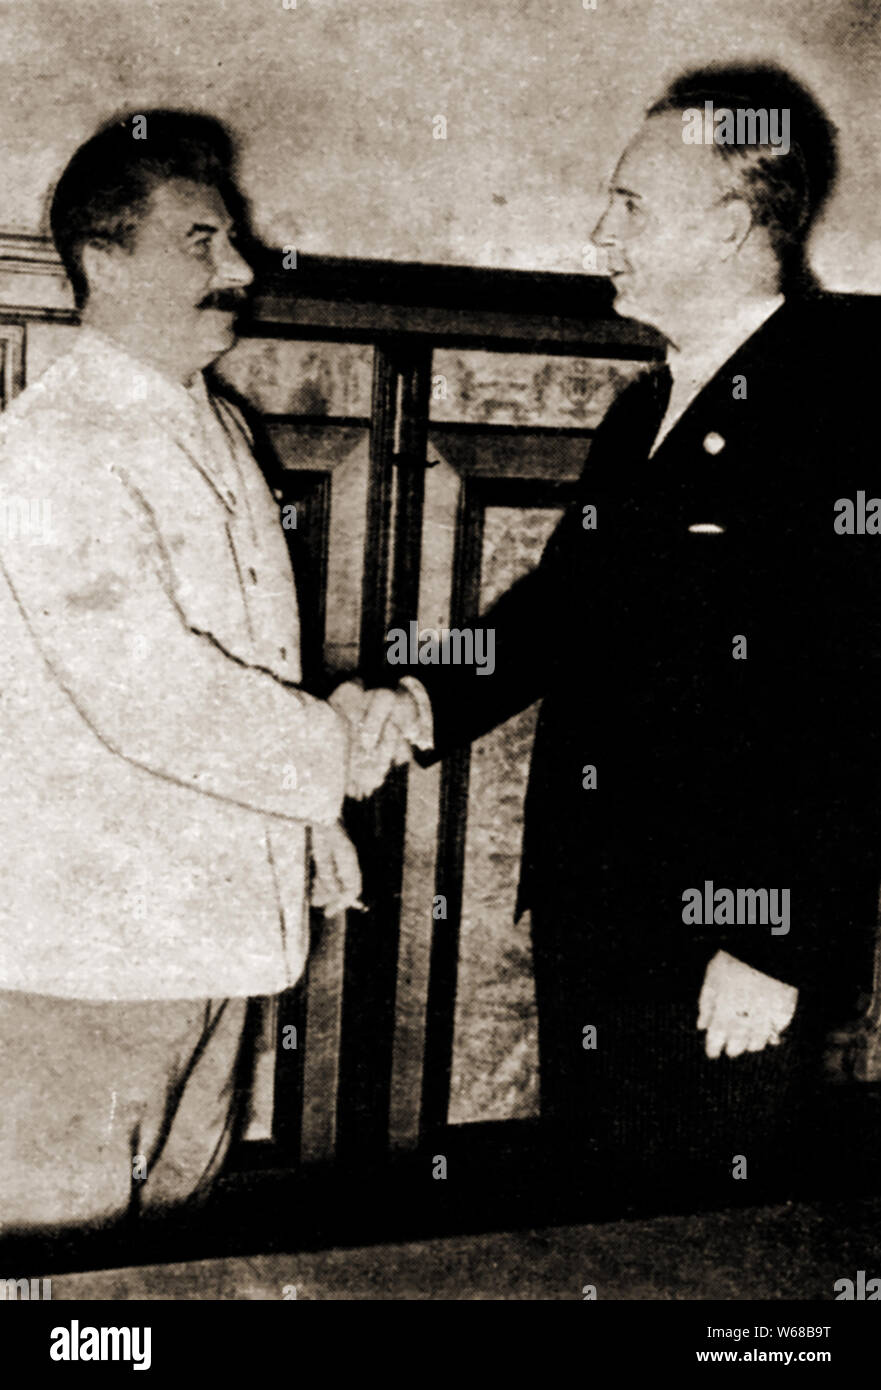 La PREMIÈRE GUERRE MONDIALE -Aug 23 1939 josephStalin & Joachim von Ribbentrop se serrer la main sur l'Allemand - pacte soviétique ( le pacte Molotov - Ribbentrop, officiellement connu sous le nom de Traité de non-agression entre l'Allemagne et l'Union des Républiques socialistes soviétiques) Banque D'Images